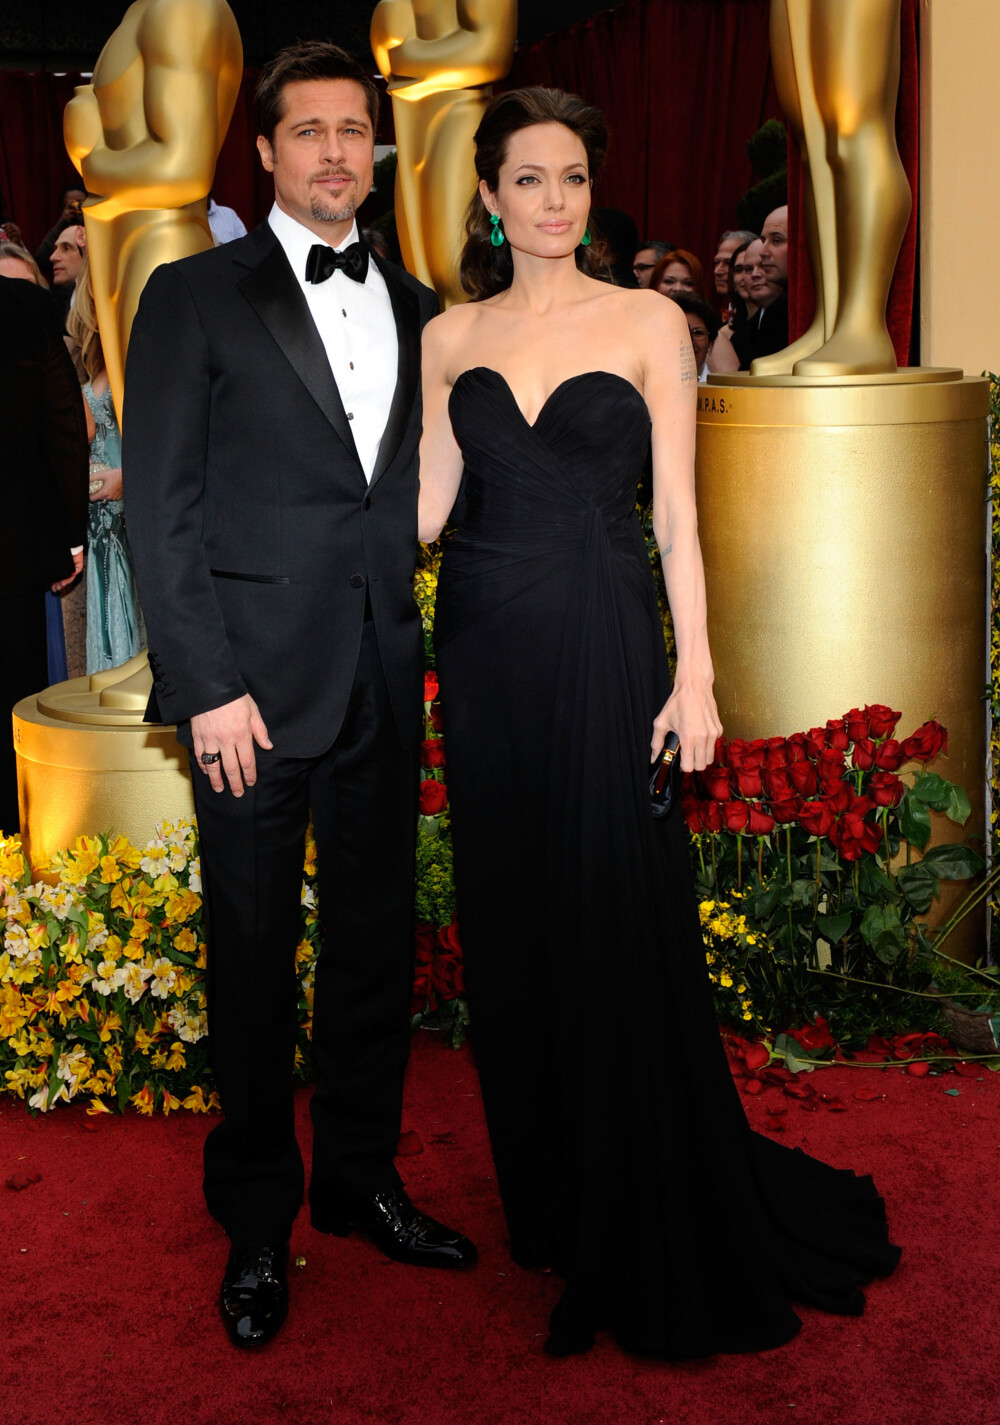 Adio, Brangelina! Povestea celui mai iubit cuplu din lume in imagini: aparitiile de neuitat cu Angelina Jolie si Brad Pitt - Imaginea 8